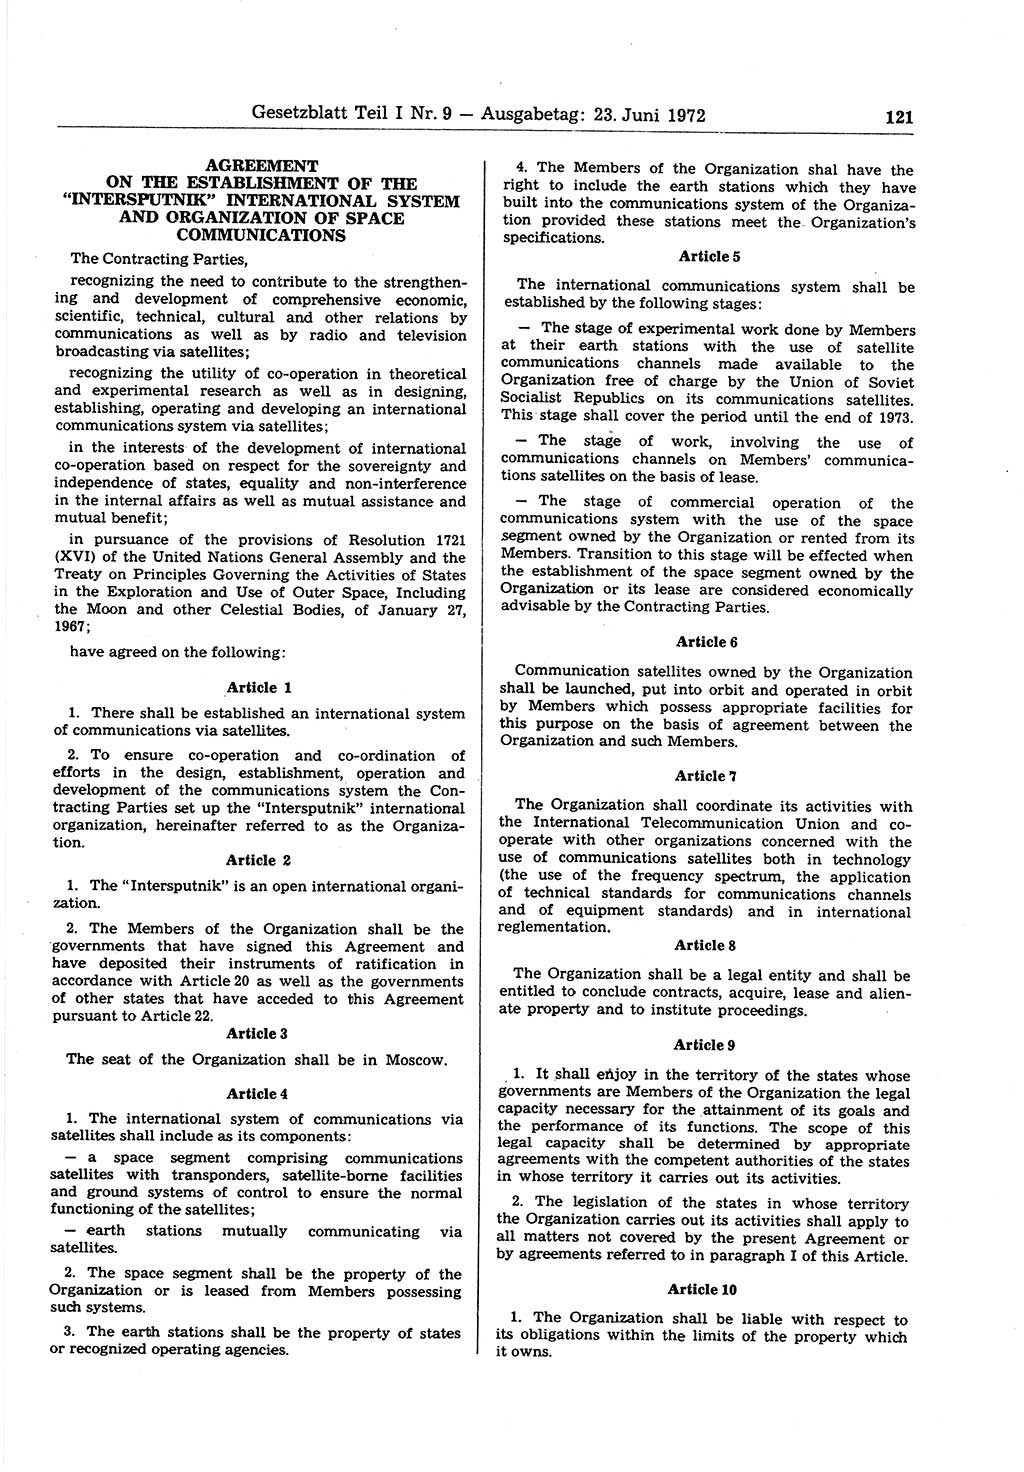 Gesetzblatt (GBl.) der Deutschen Demokratischen Republik (DDR) Teil Ⅰ 1972, Seite 121 (GBl. DDR Ⅰ 1972, S. 121)